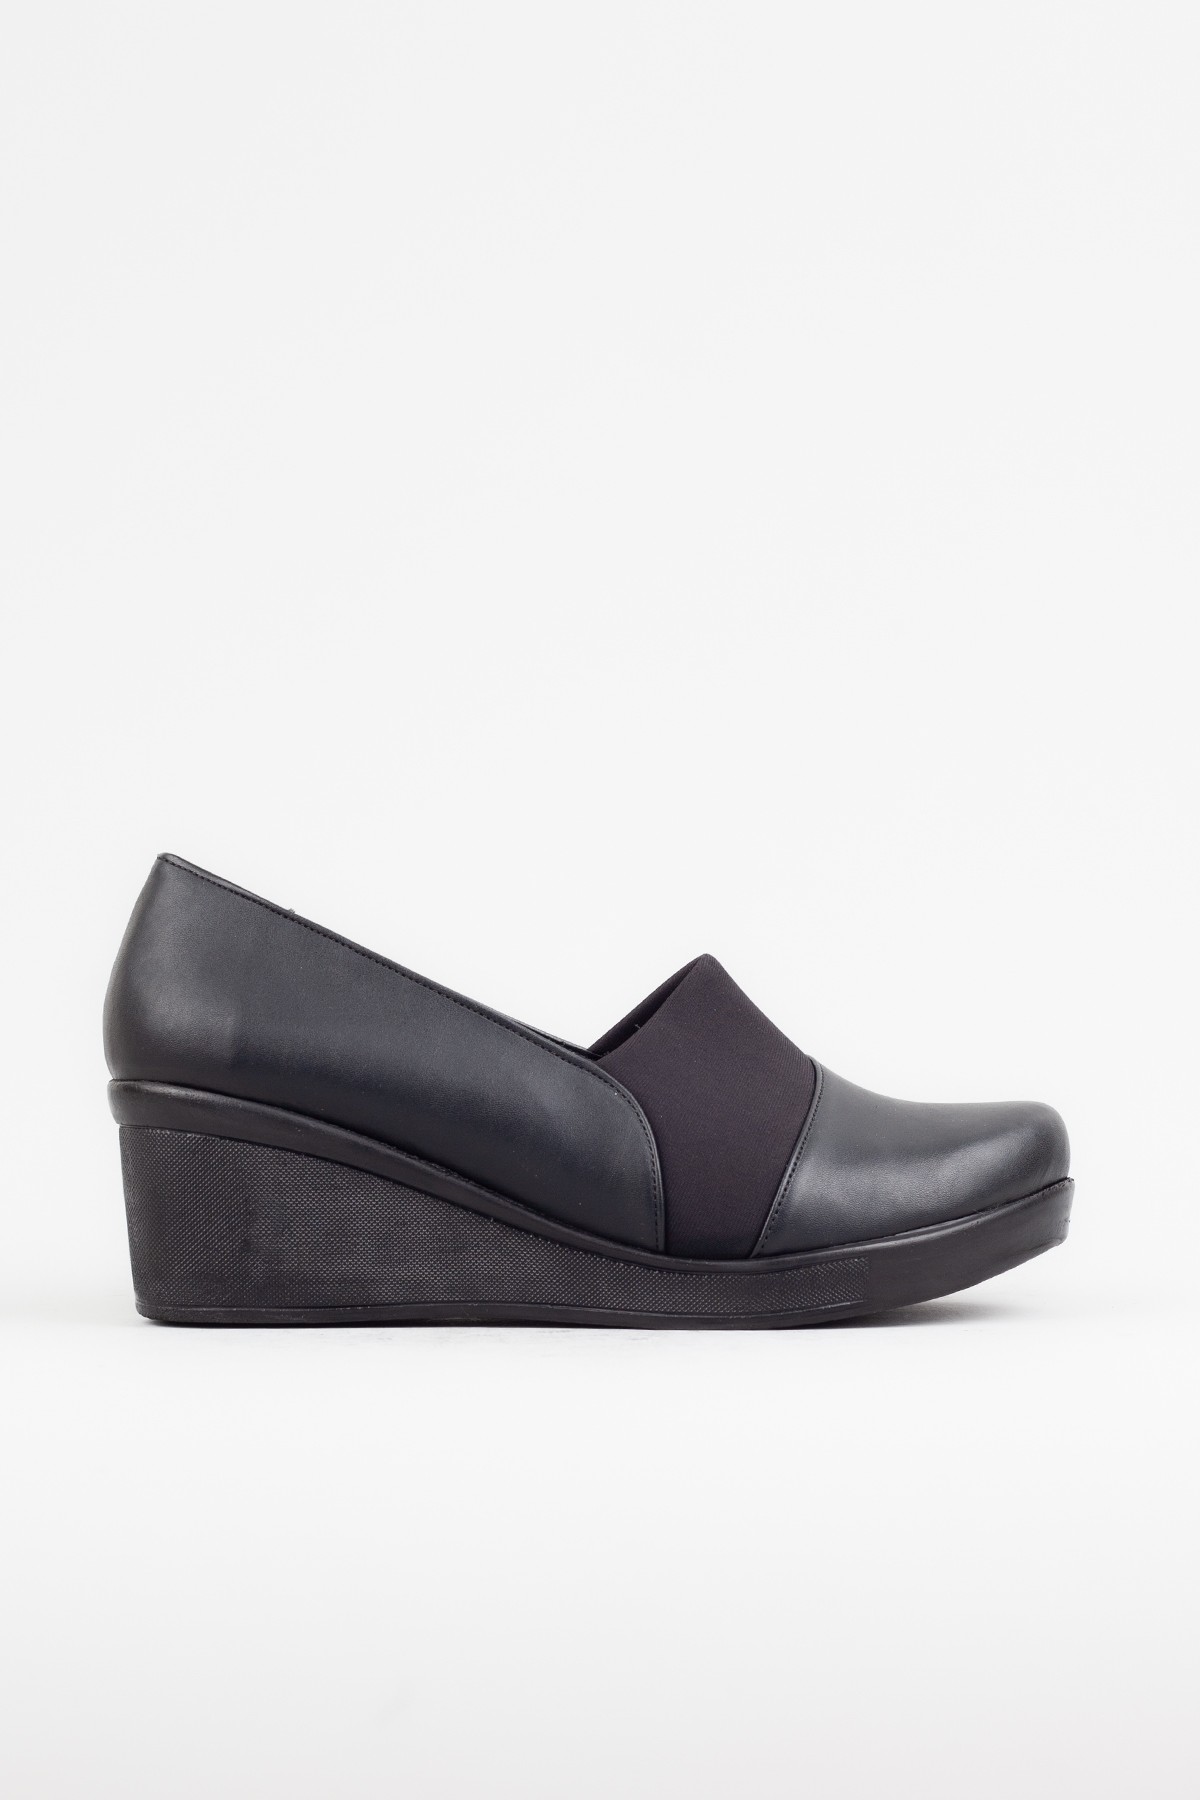 Kadın Siyah Renk Dolgu Topuklu Ayakkabı